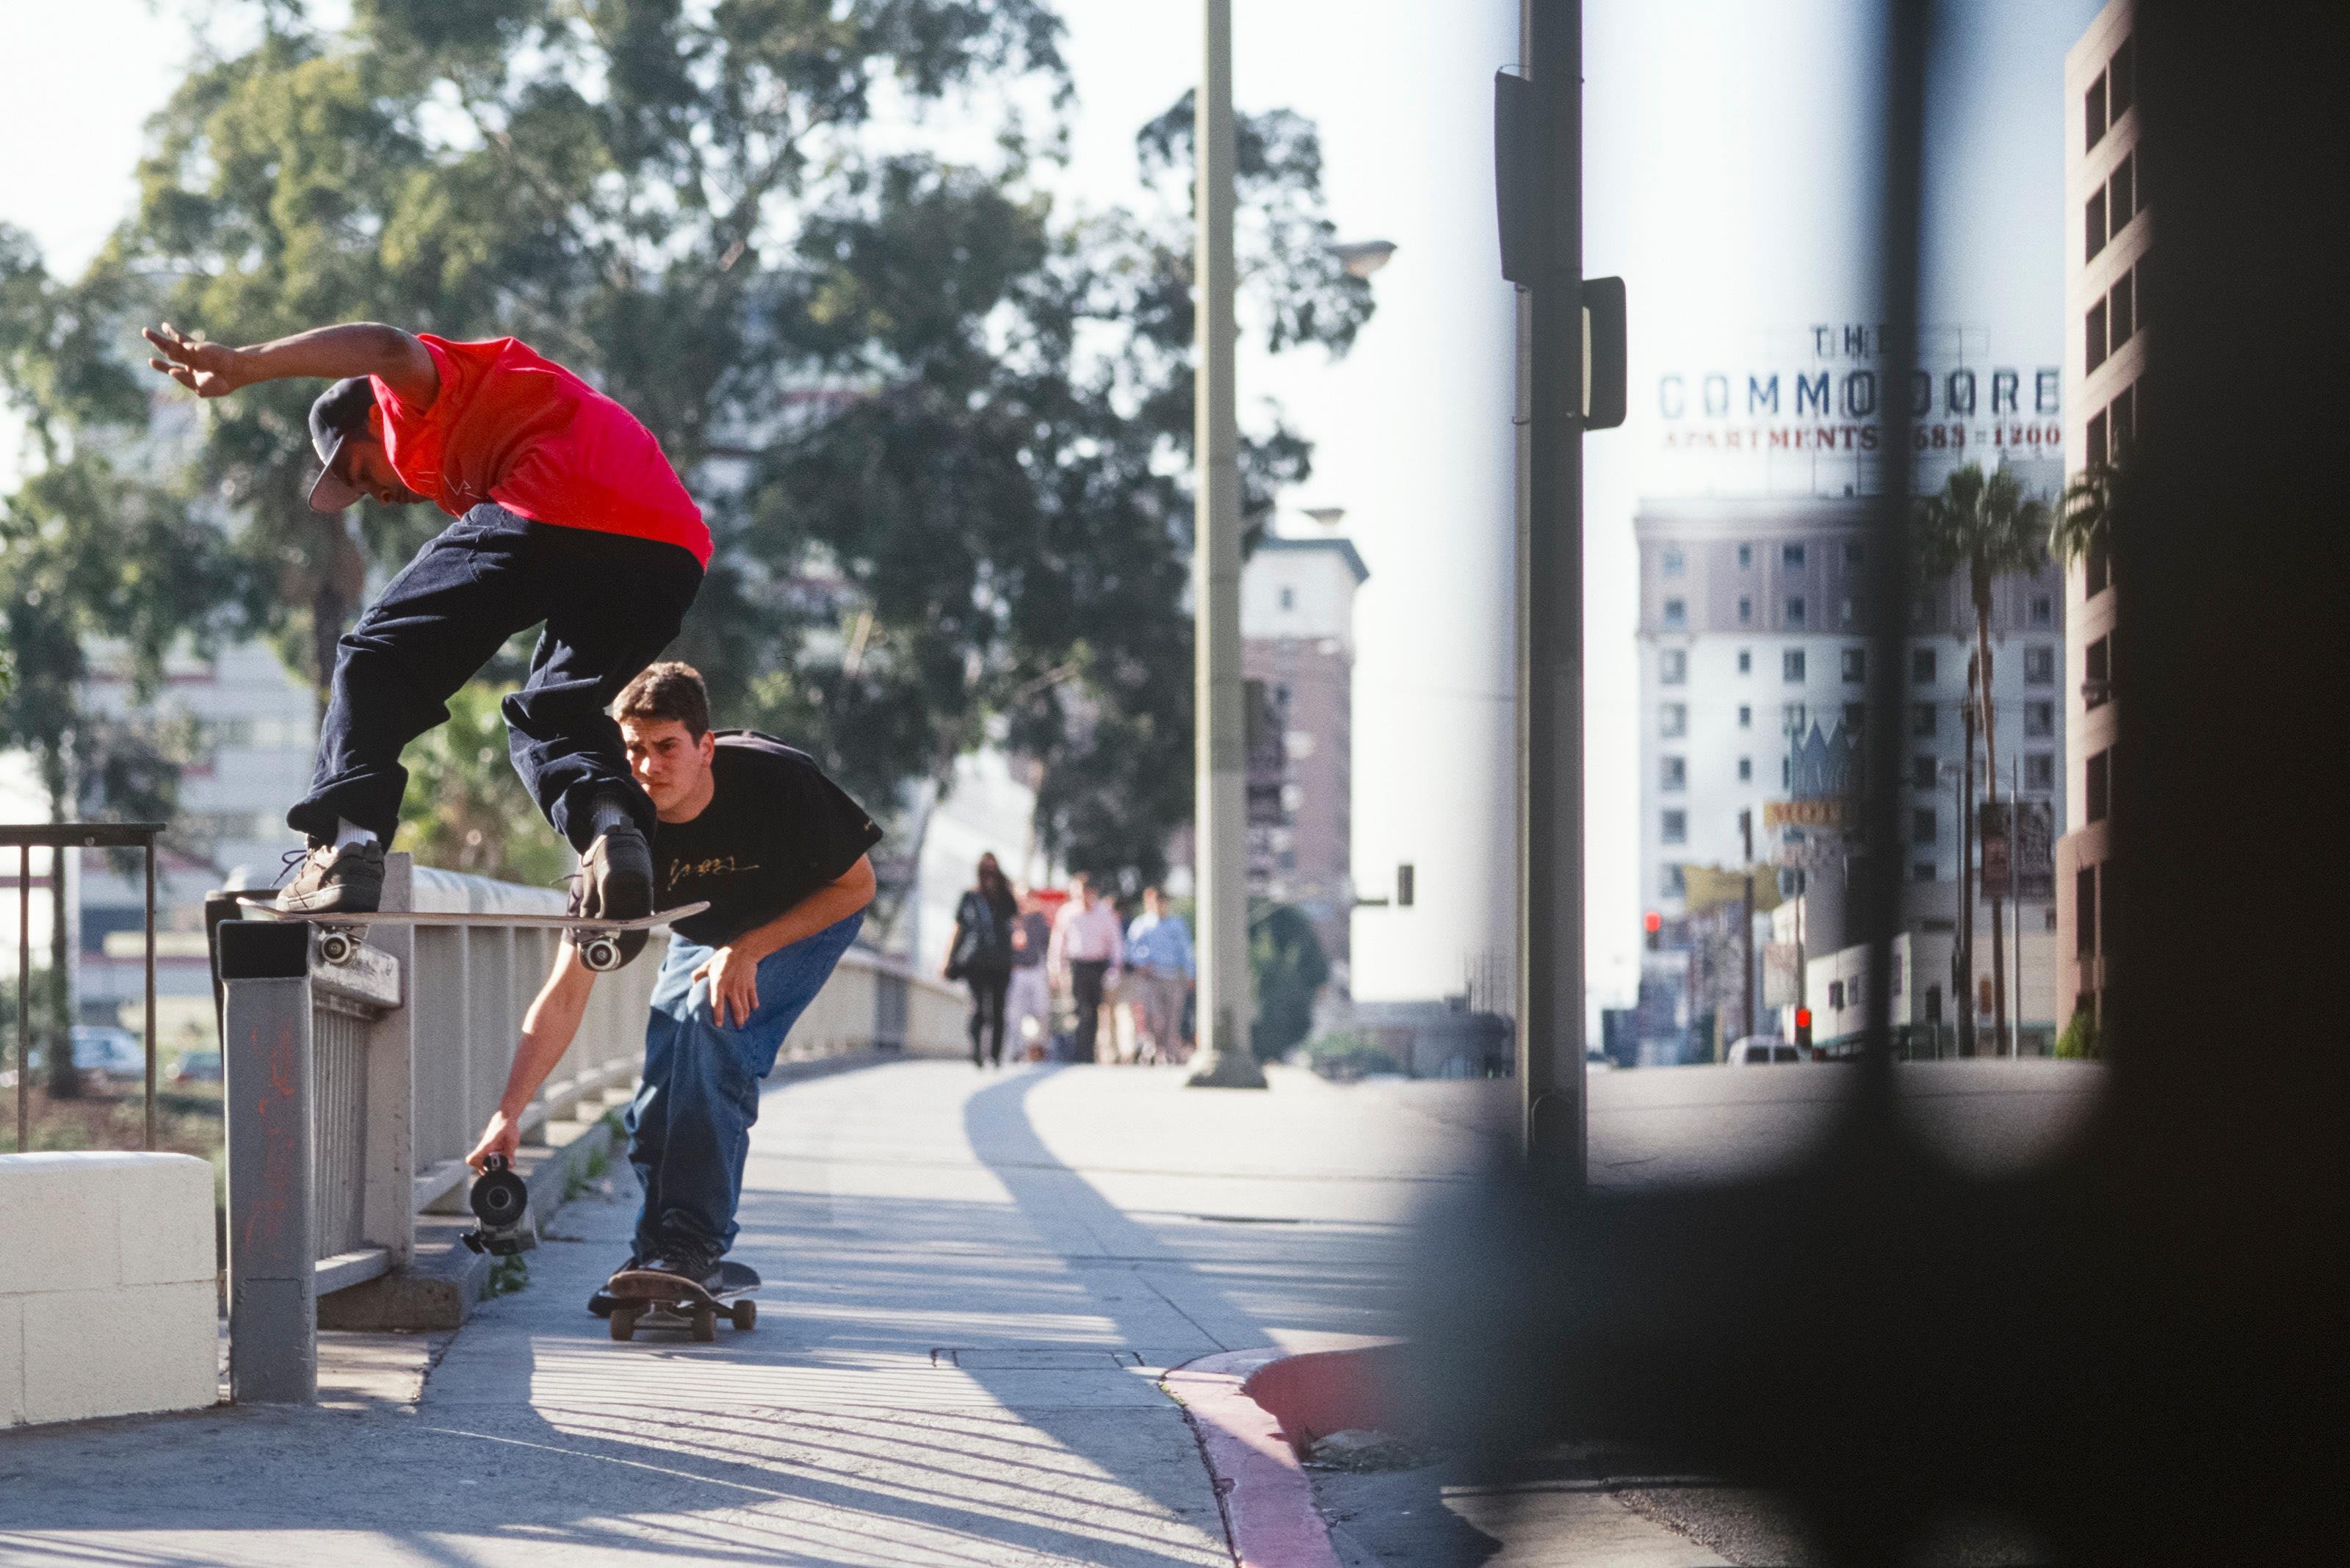 2015.3.4 | マイク・ブラバックが捉えたスケートシーン | Skateboarding